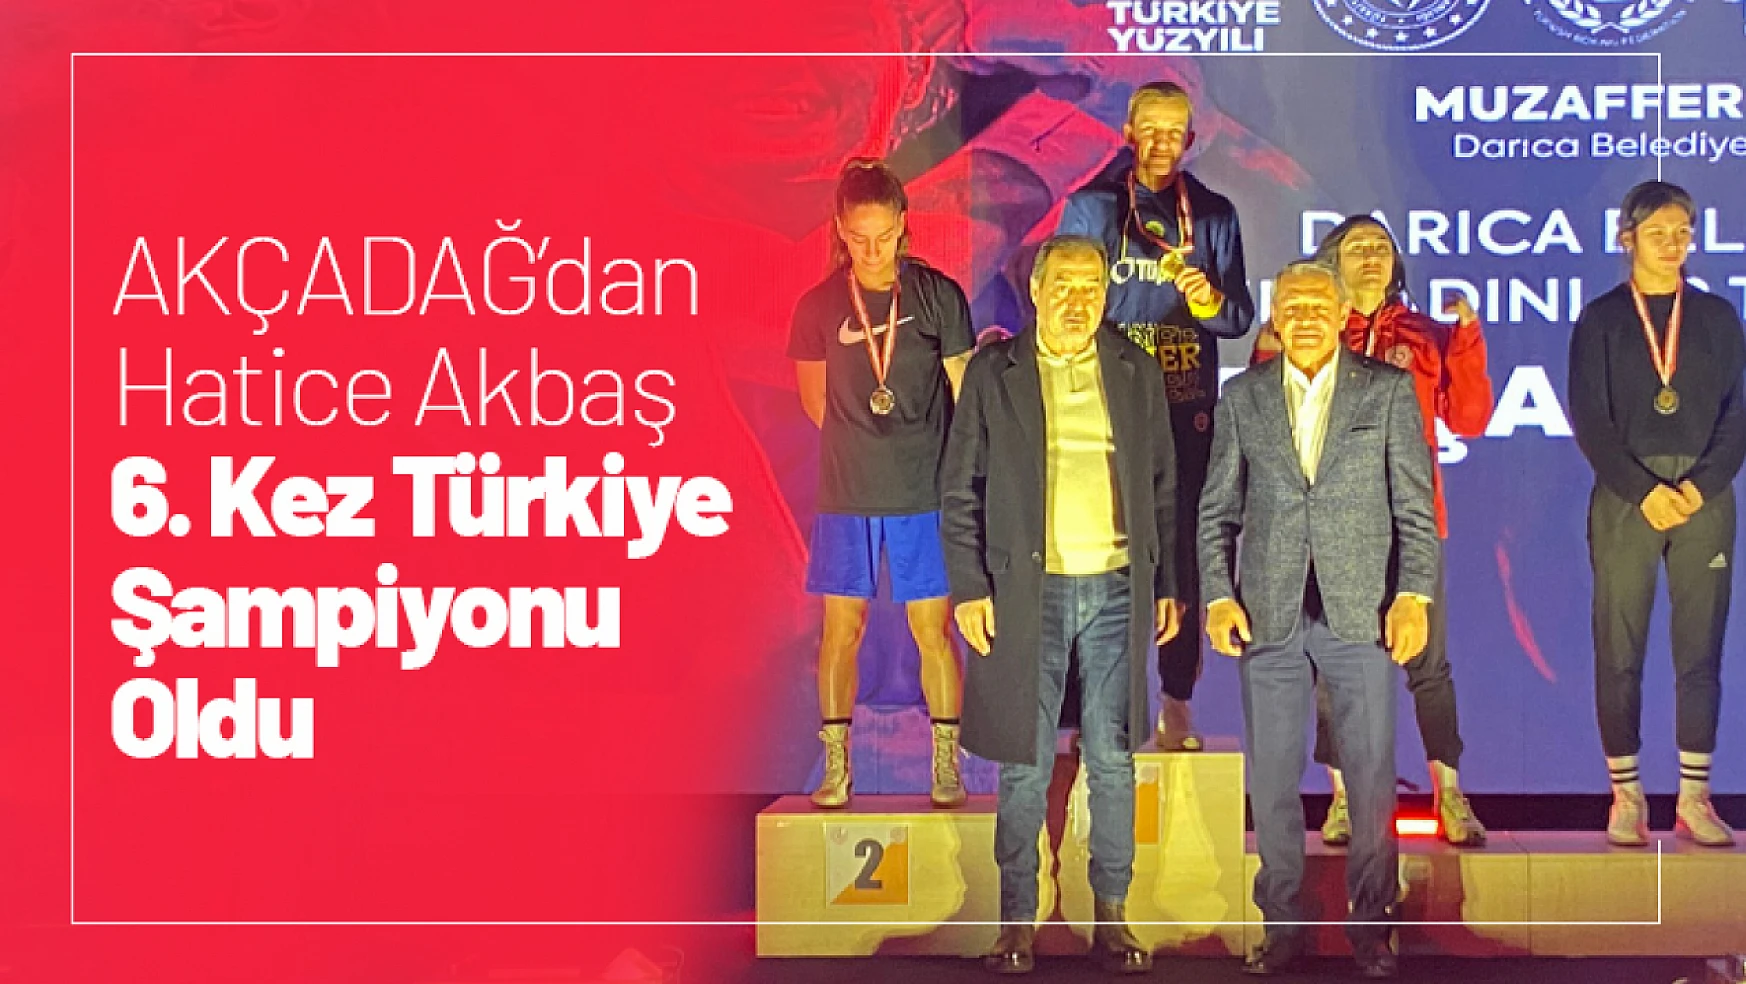 Akçadağ'dan Hatice Akbaş 6. Kez Türkiye Şampiyonu Oldu...